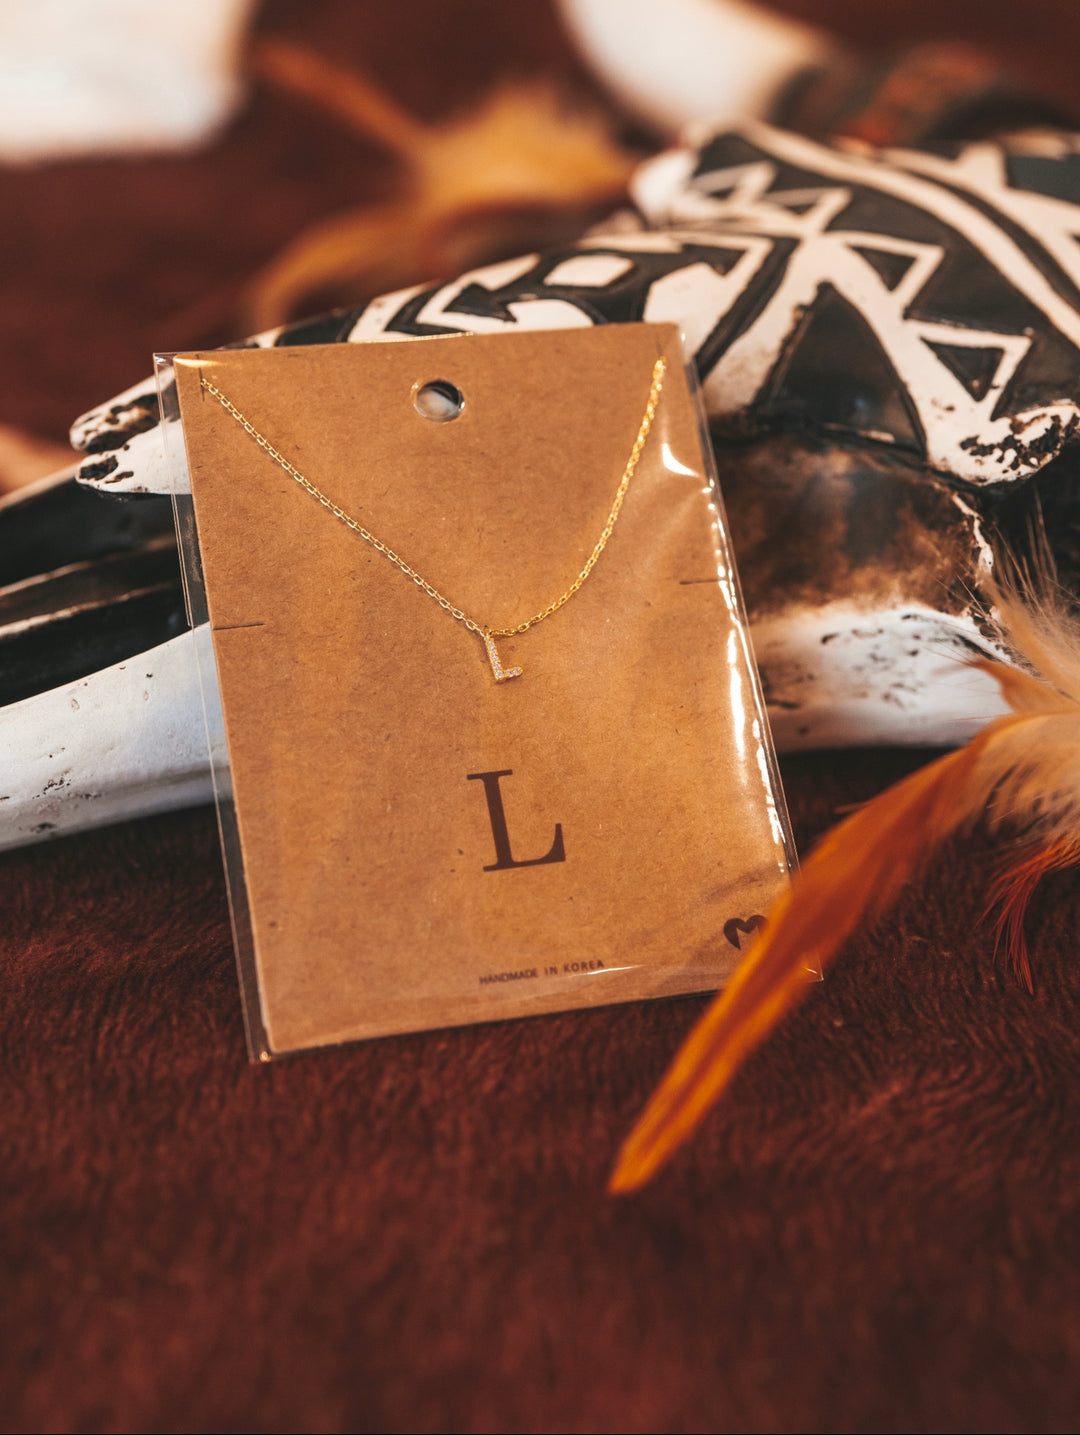 L Letter Necklace